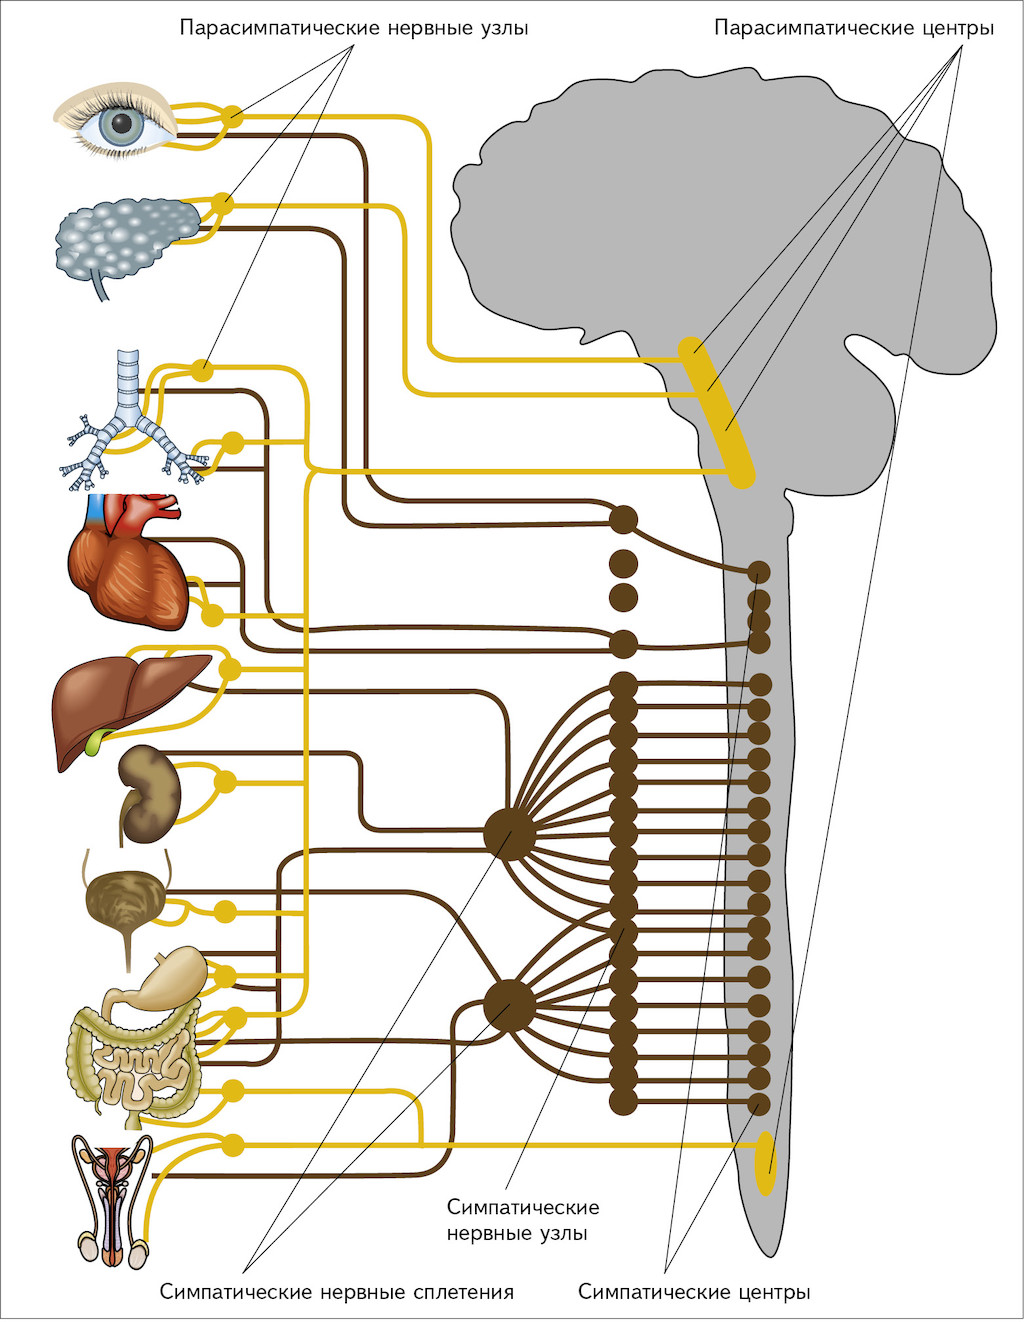 Нервные центры симпатического отдела. Парасимпатический отдел вегетативной нервной системы схема. Нервная система человека симпатическая и парасимпатическая. Ганглии симпатической и парасимпатической системы. Вегетативная нервная система центральные отделы парасимпатическая.